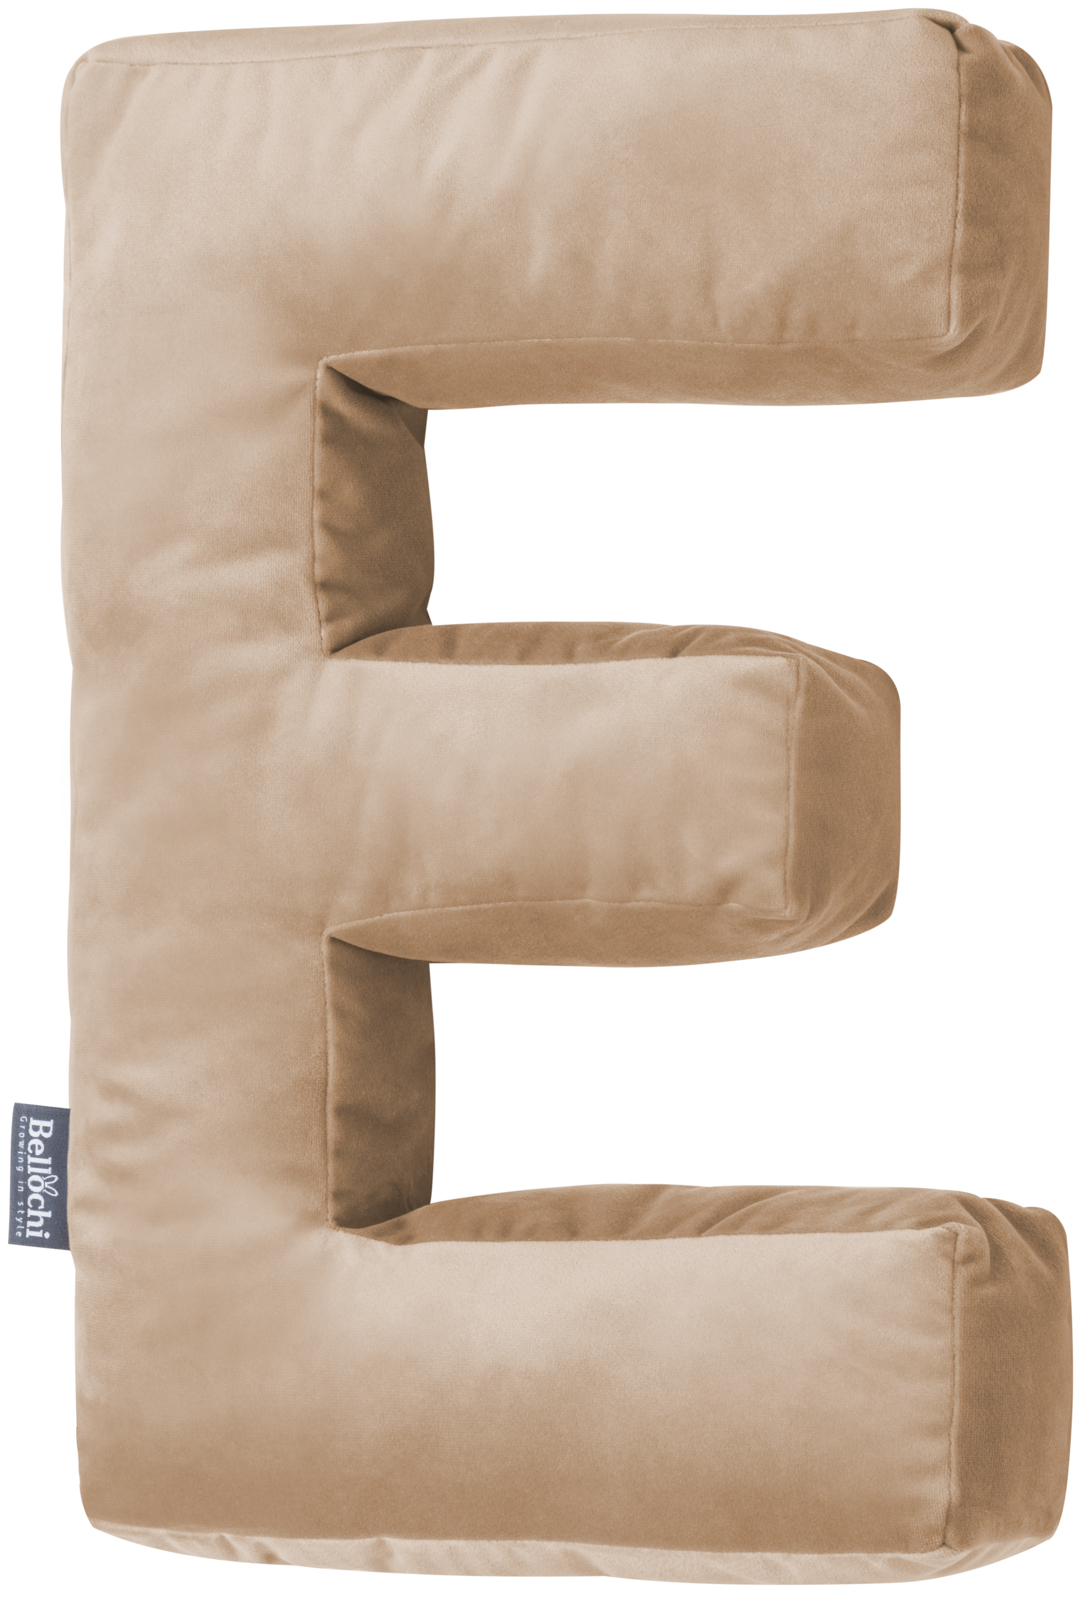 Decorative velvet letter pillow E shaped beige